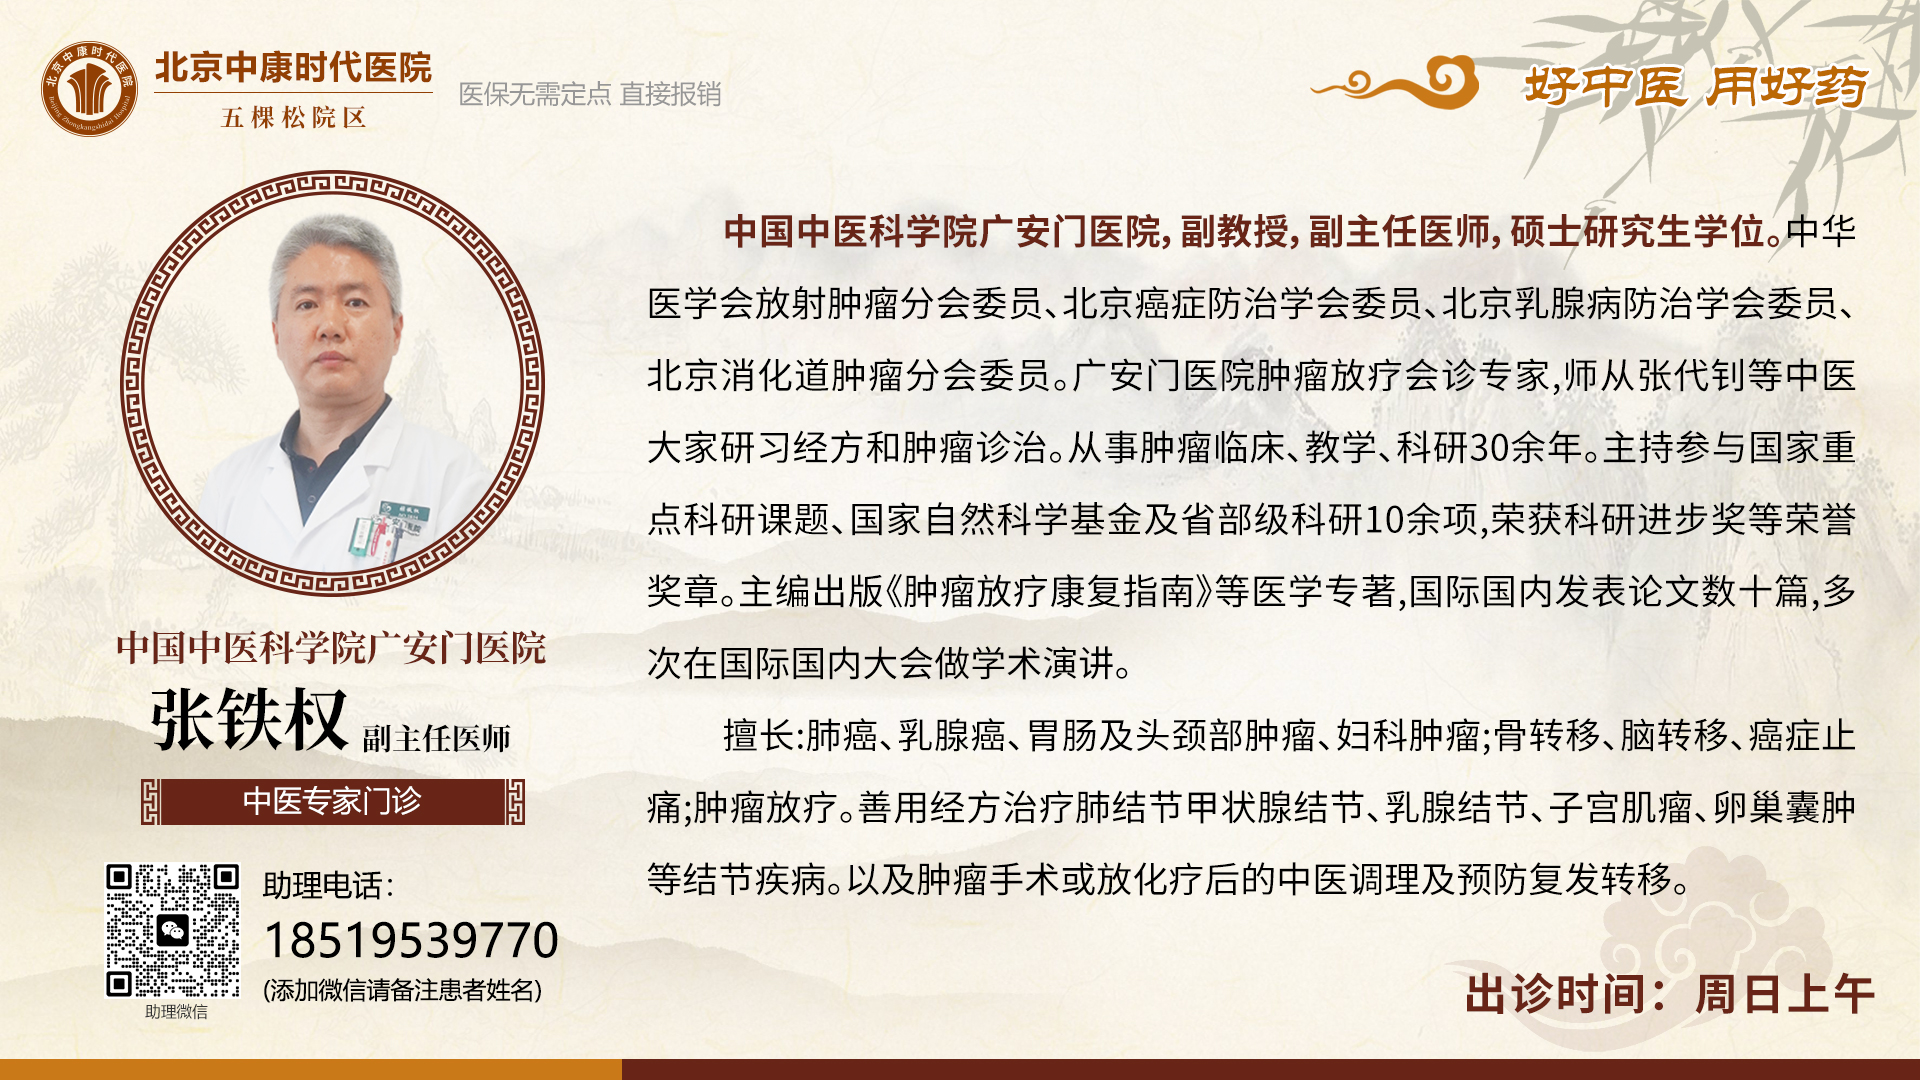 中国中医科学院广安门医院张铁权出诊信息